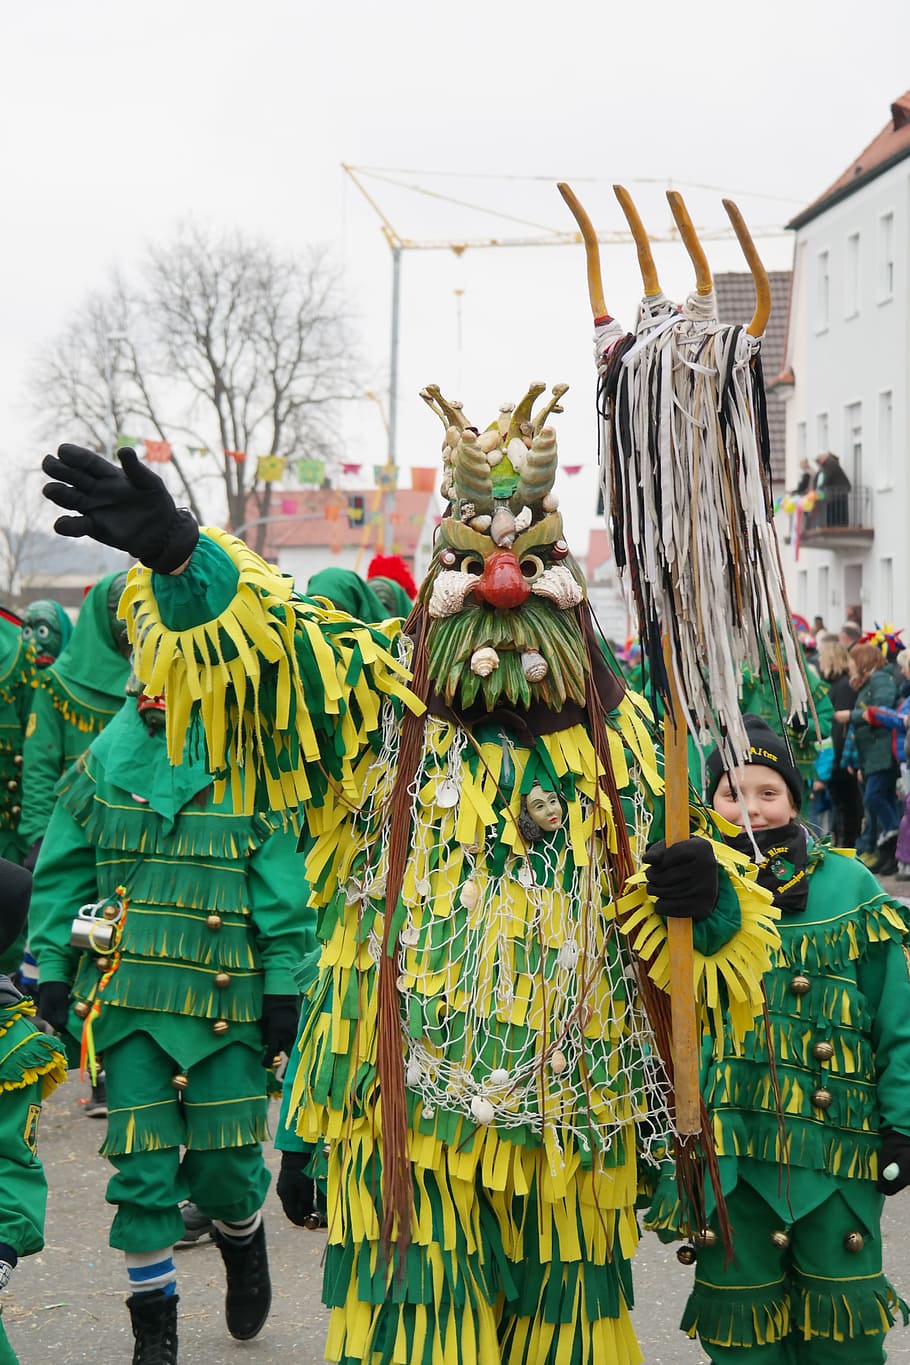 Carnival, Mask, Panel, Neptune, Sea God, masks, street carnival